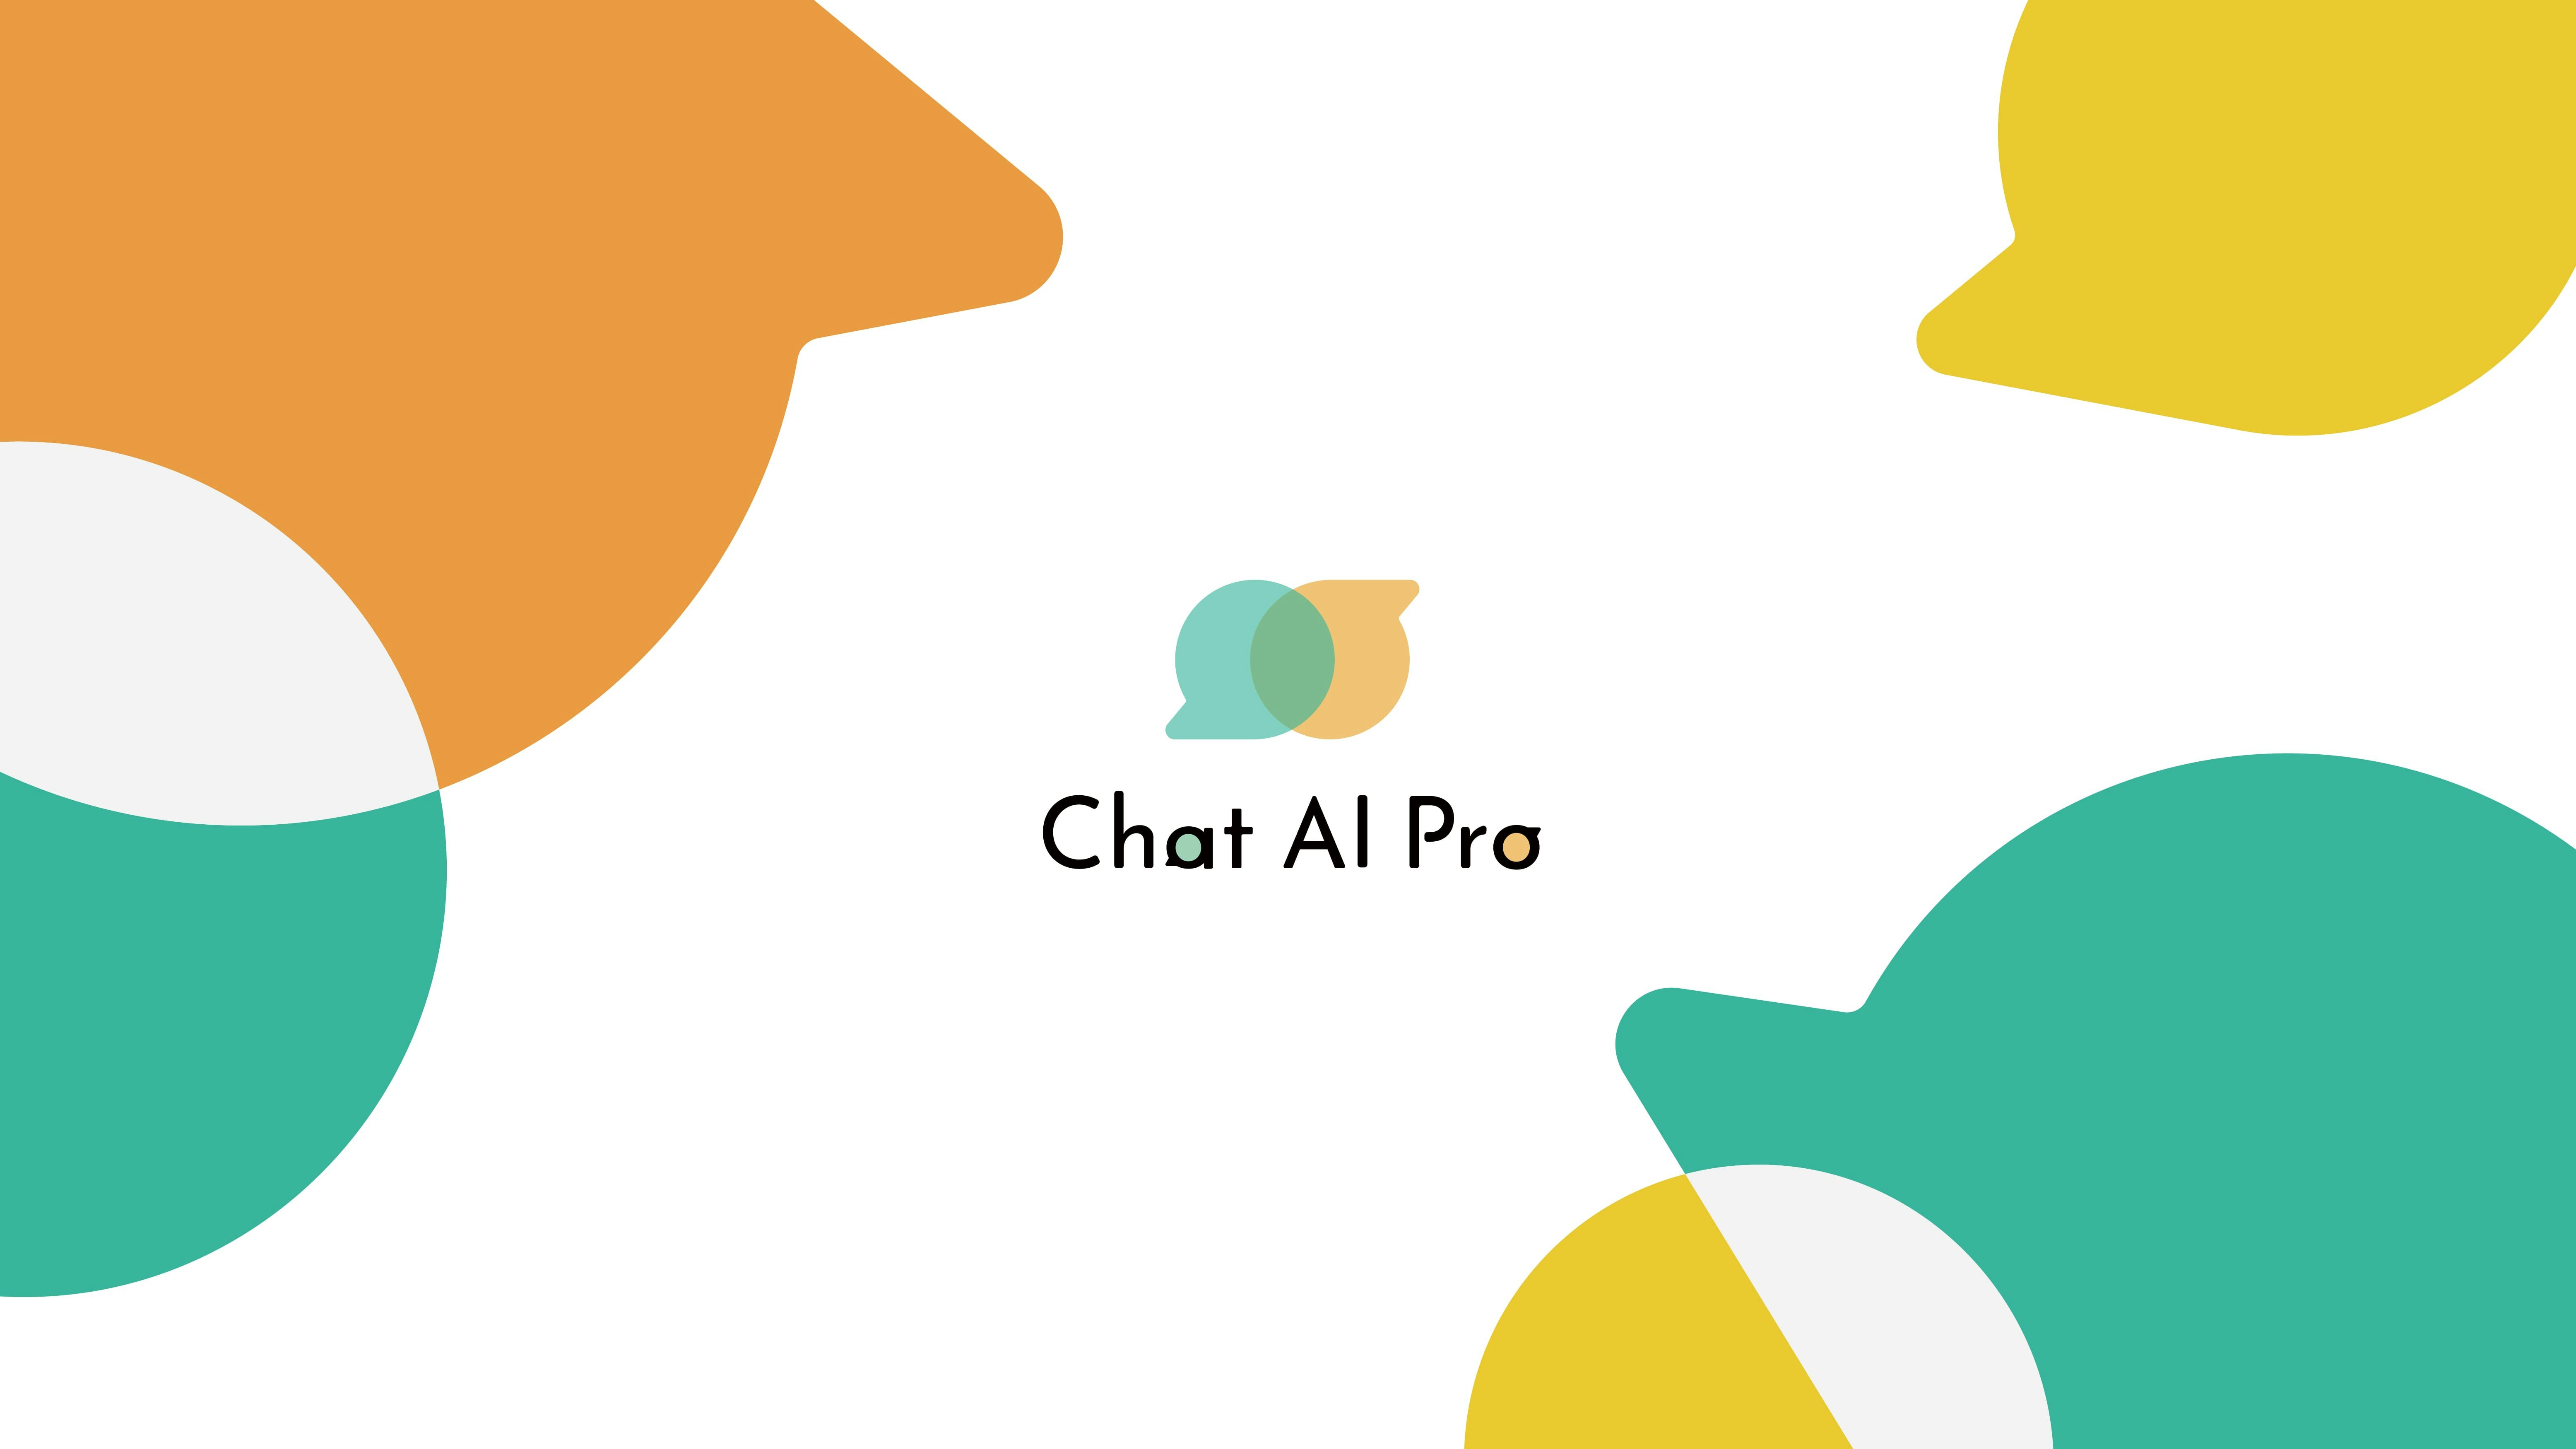 Chat AI Pro